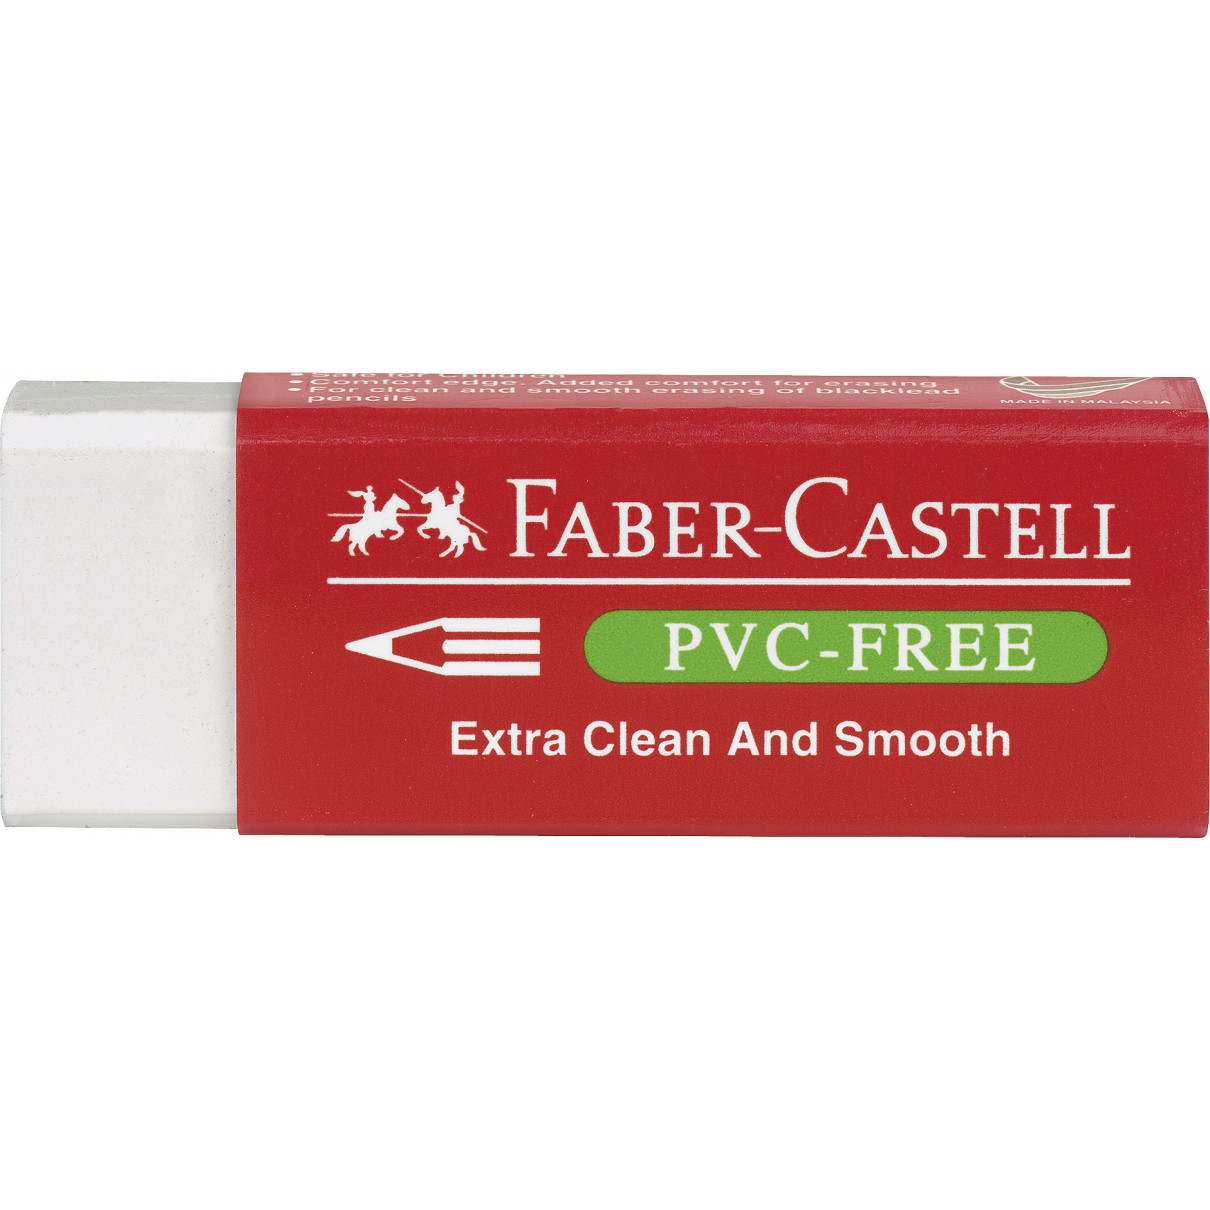 Faber-Castell PVC-free Eraser - White